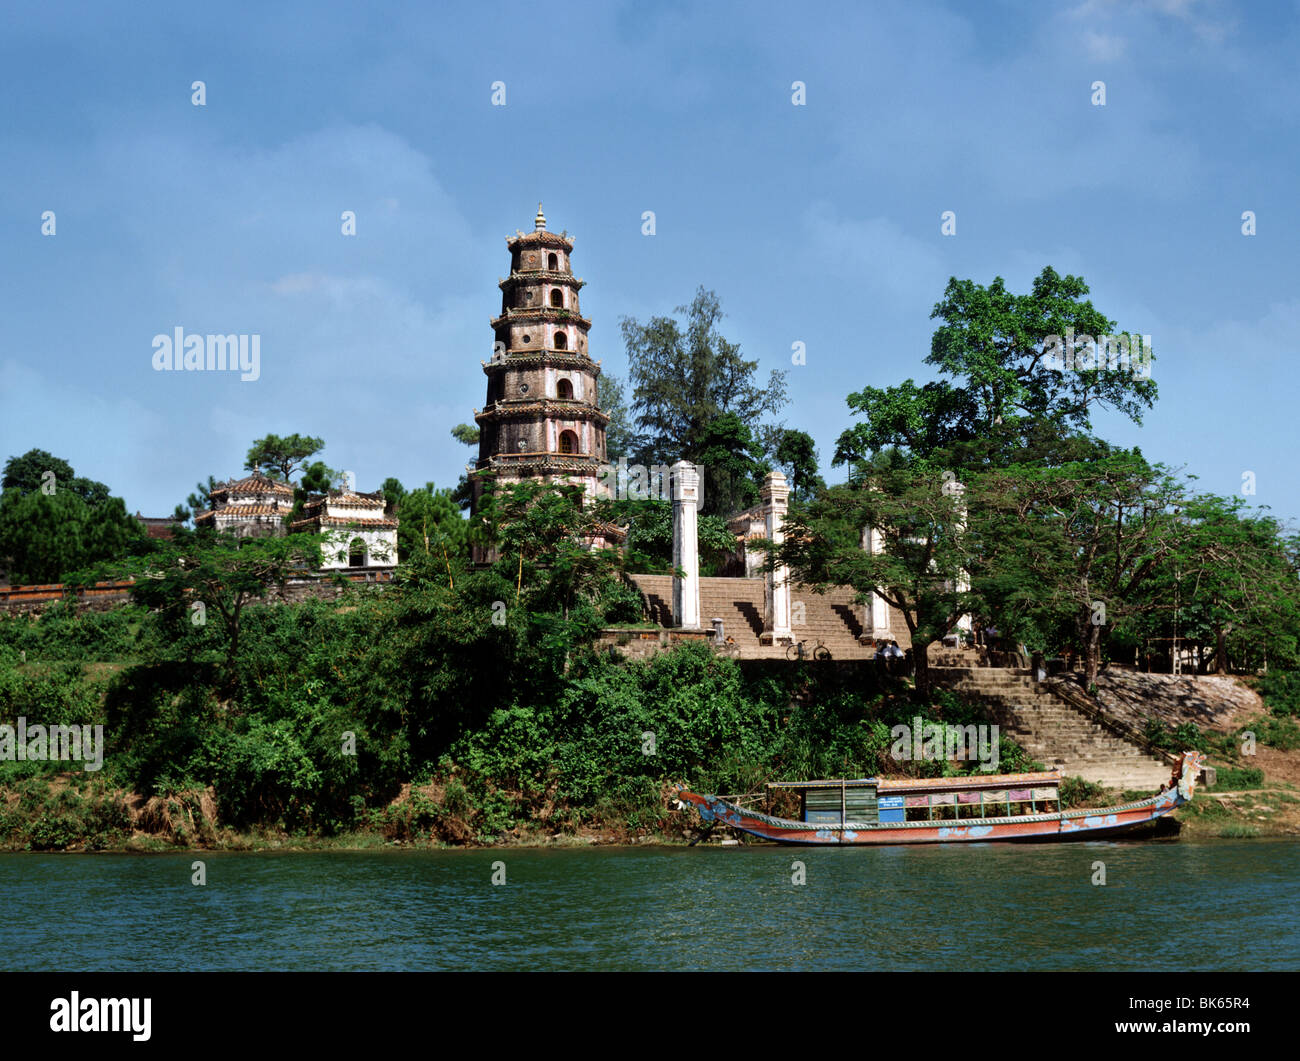 La Pagoda de Thien Mu, Sitio del Patrimonio Mundial de la UNESCO, situado en la orilla izquierda del río Perfume, Hue, Vietnam Foto de stock